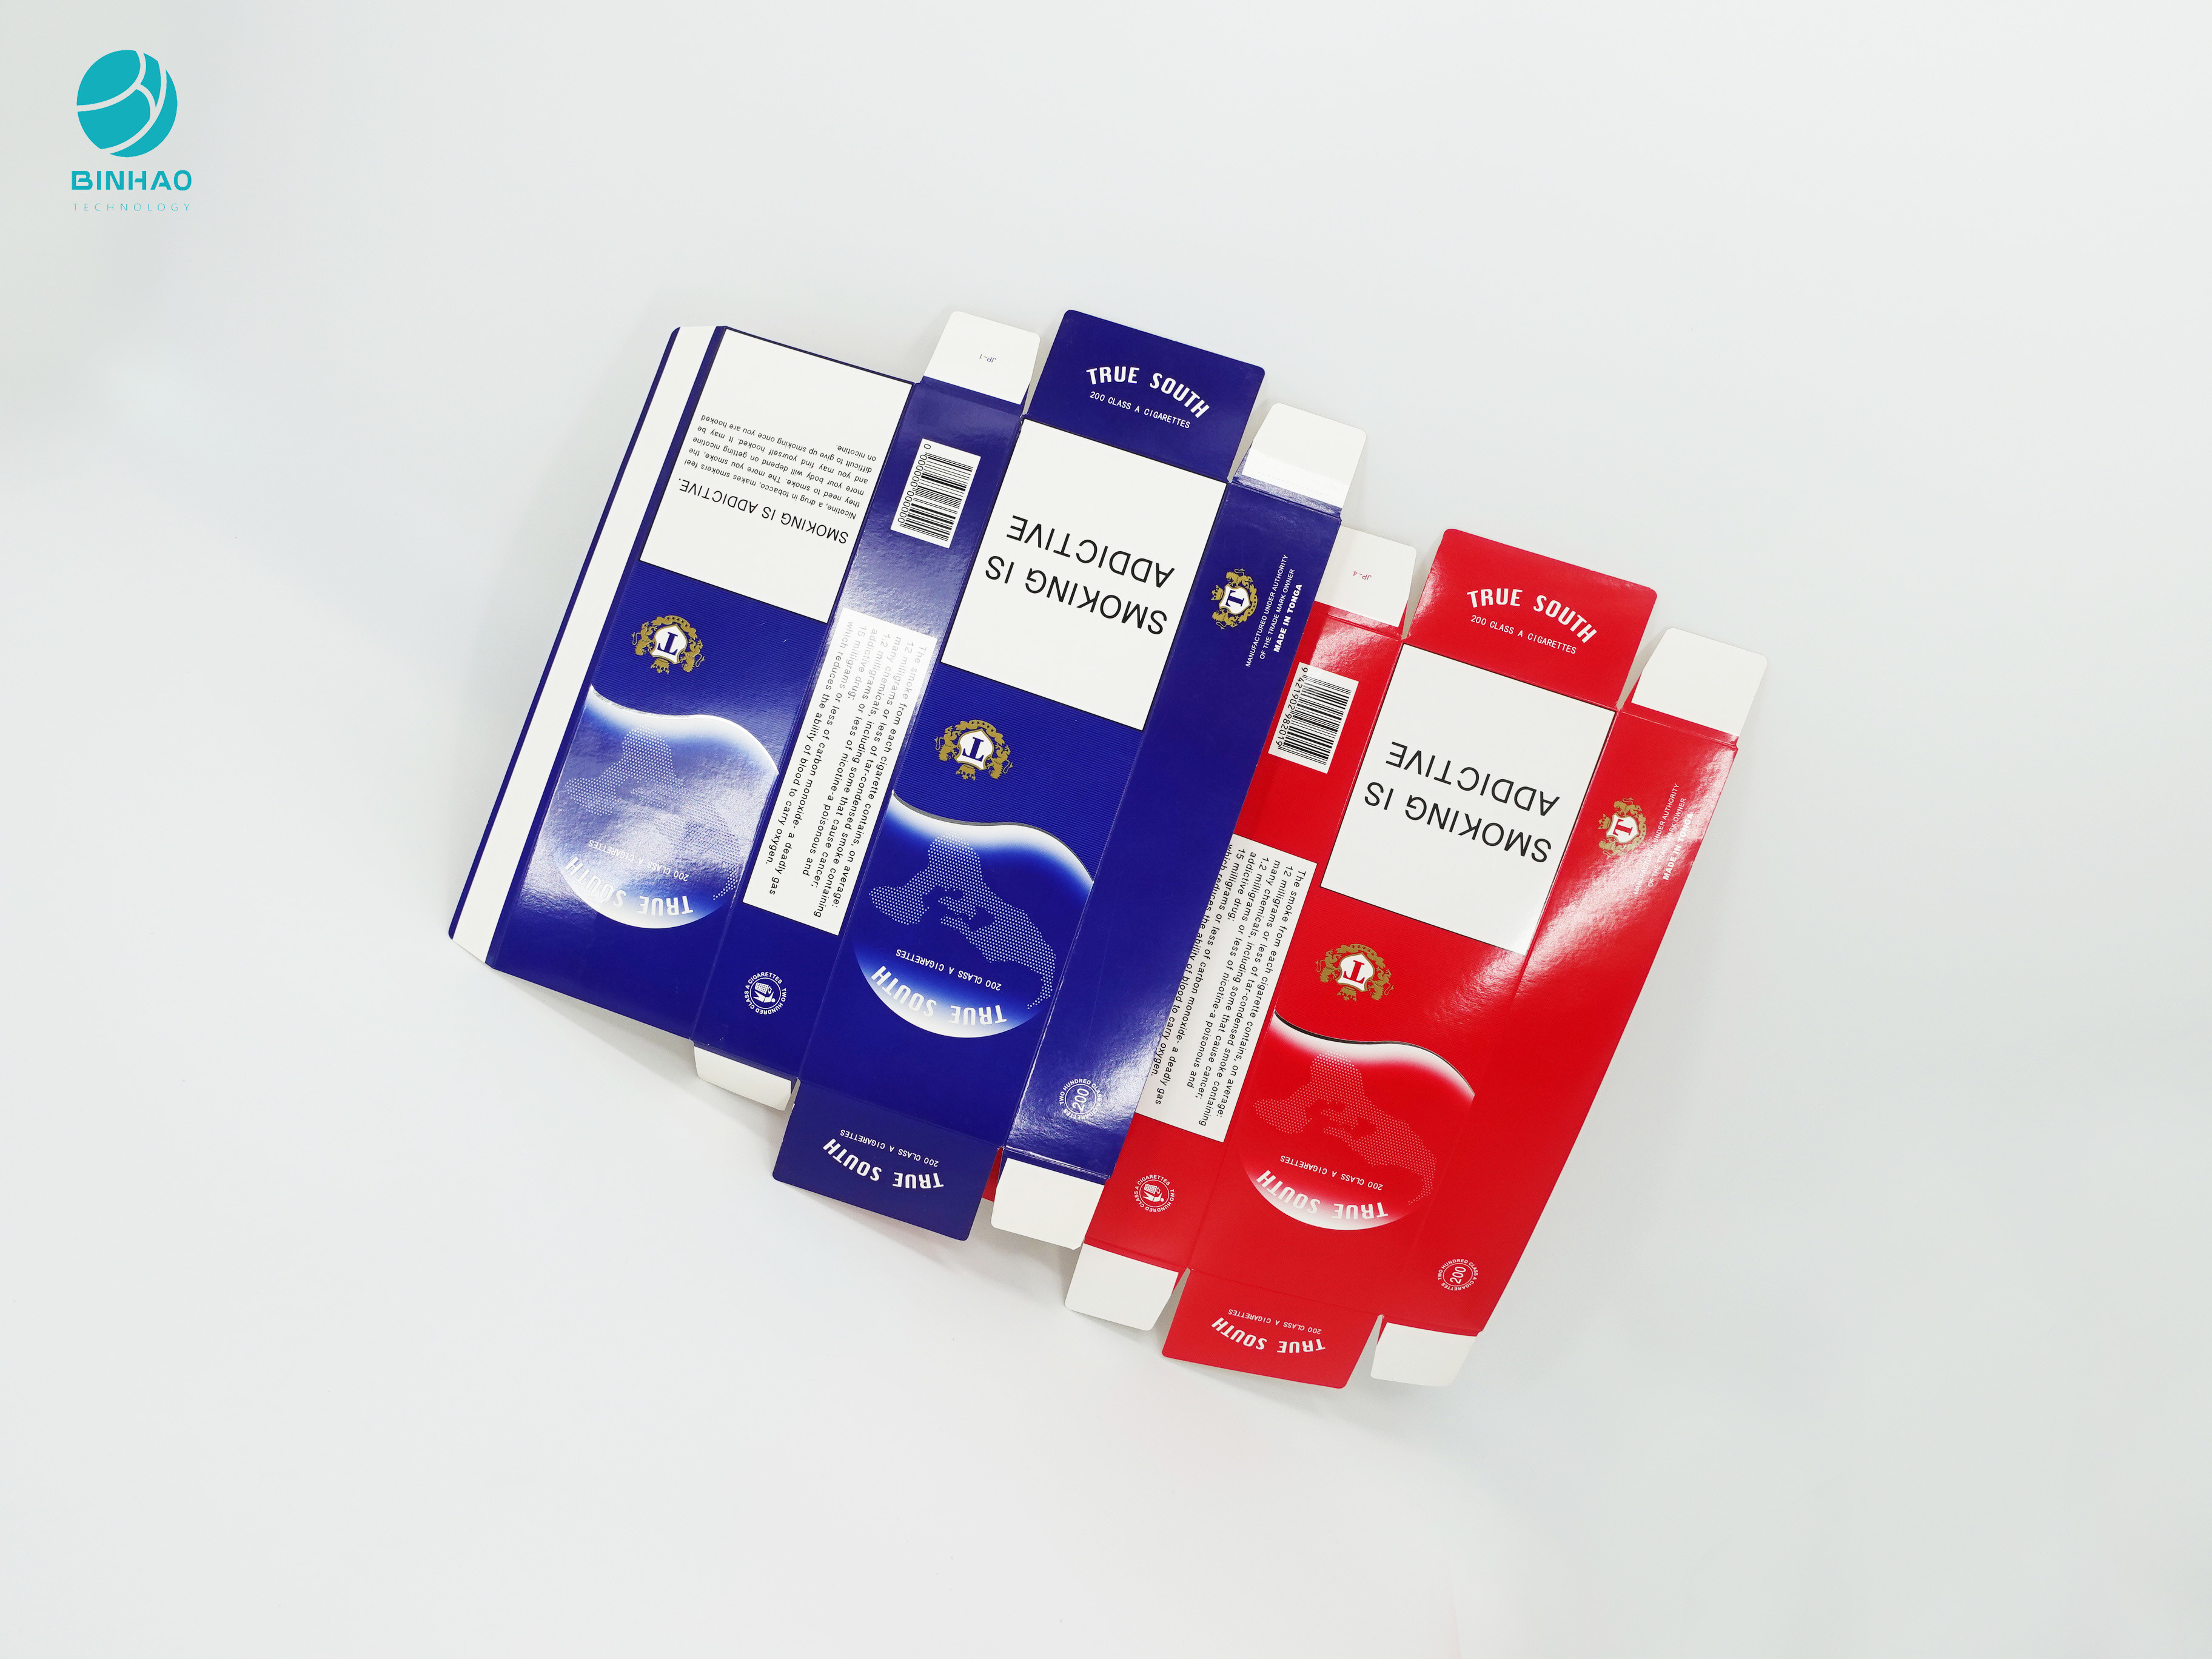 Blue Red Series Design กล่องกระดาษแข็งแบบใช้แล้วทิ้งที่ทนทานสำหรับบรรจุภัณฑ์บุหรี่